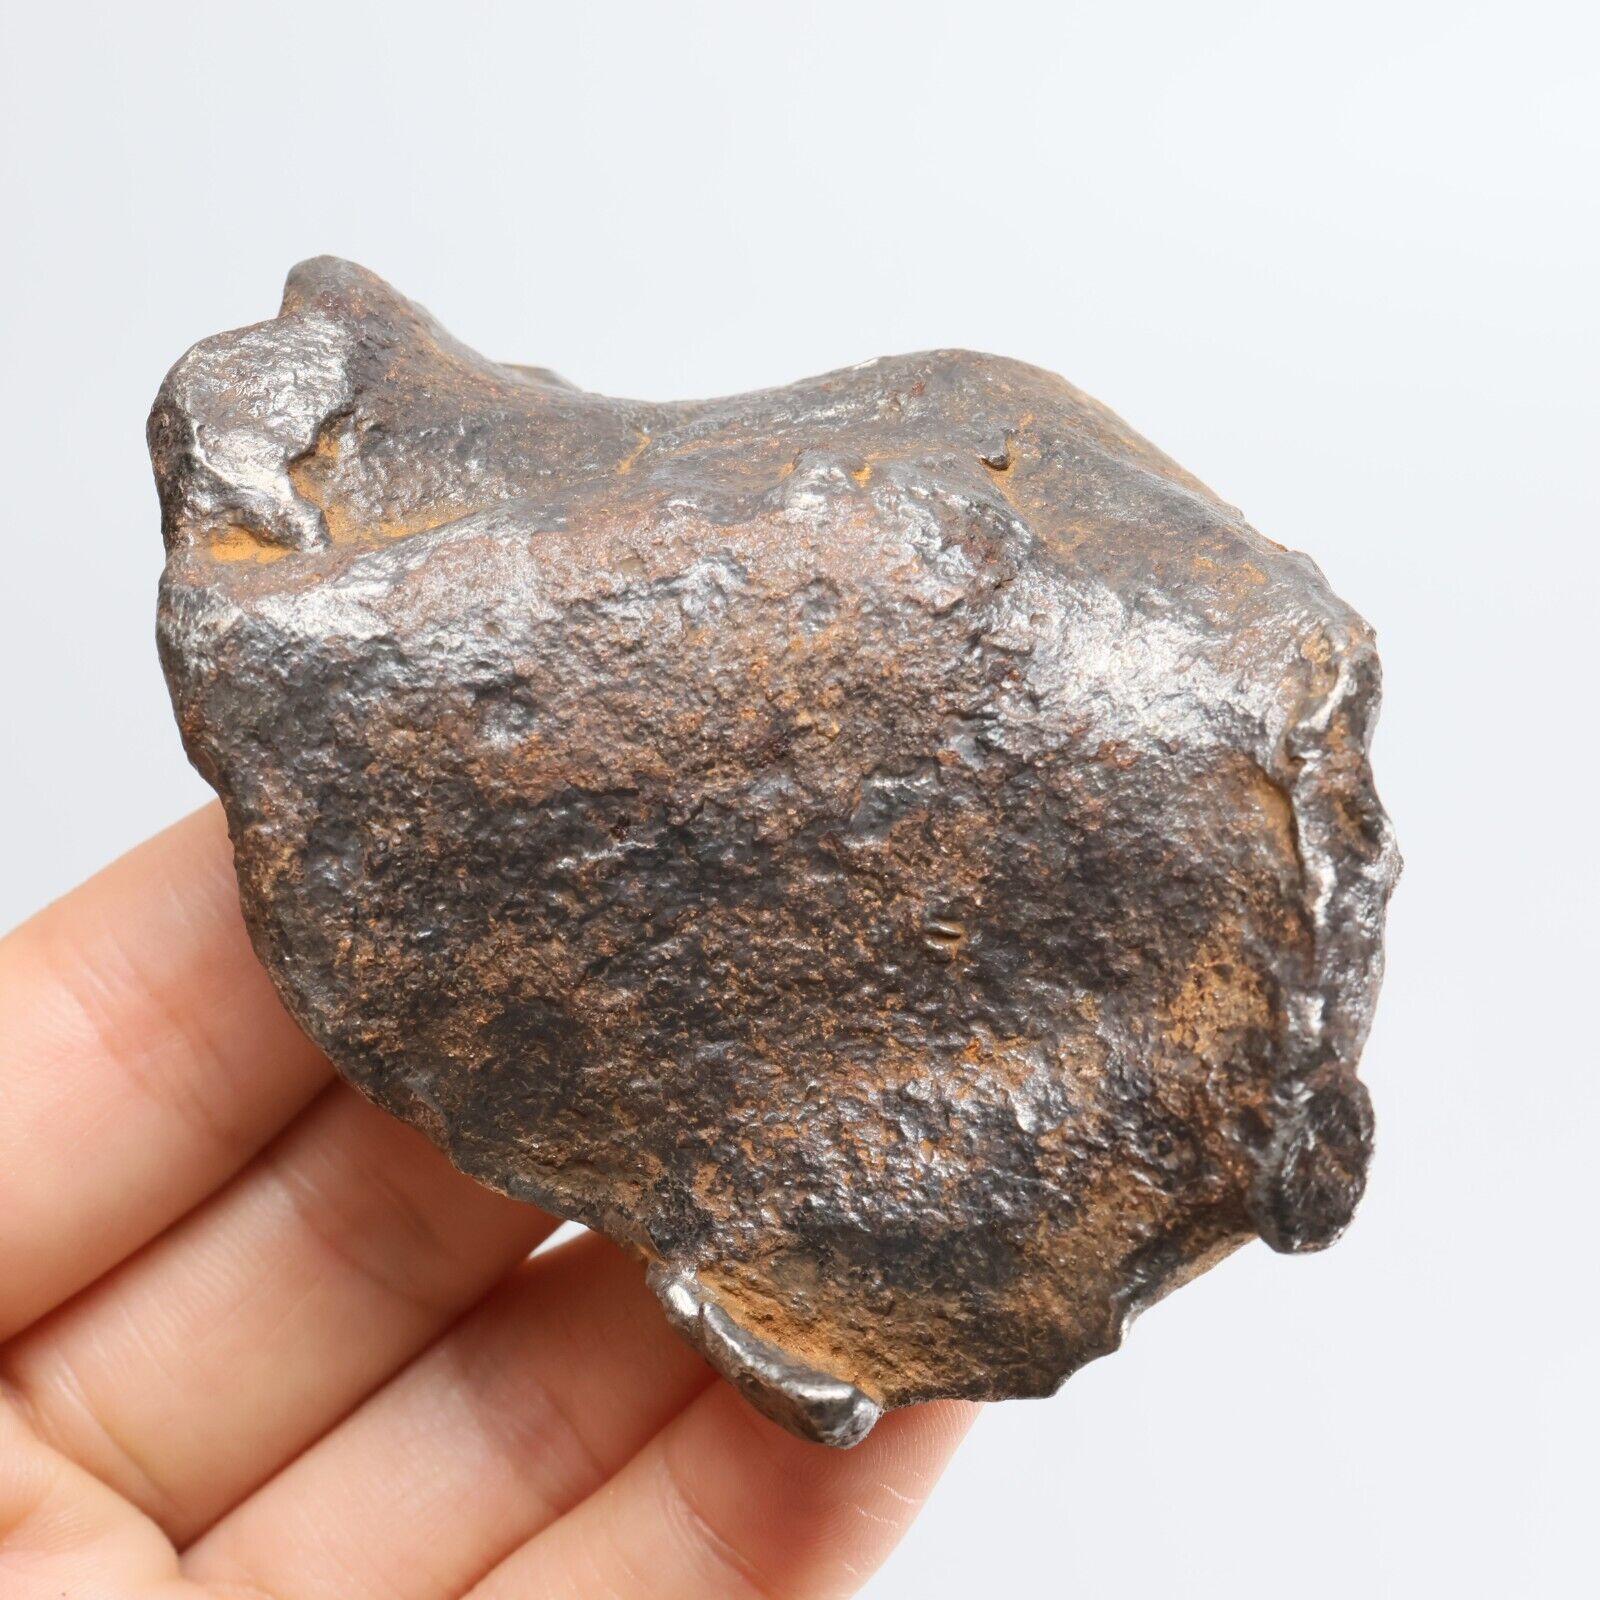 245g Gebel Kamil iron meteorite, Egypt, Space Gift, meteorite, specimen R1483